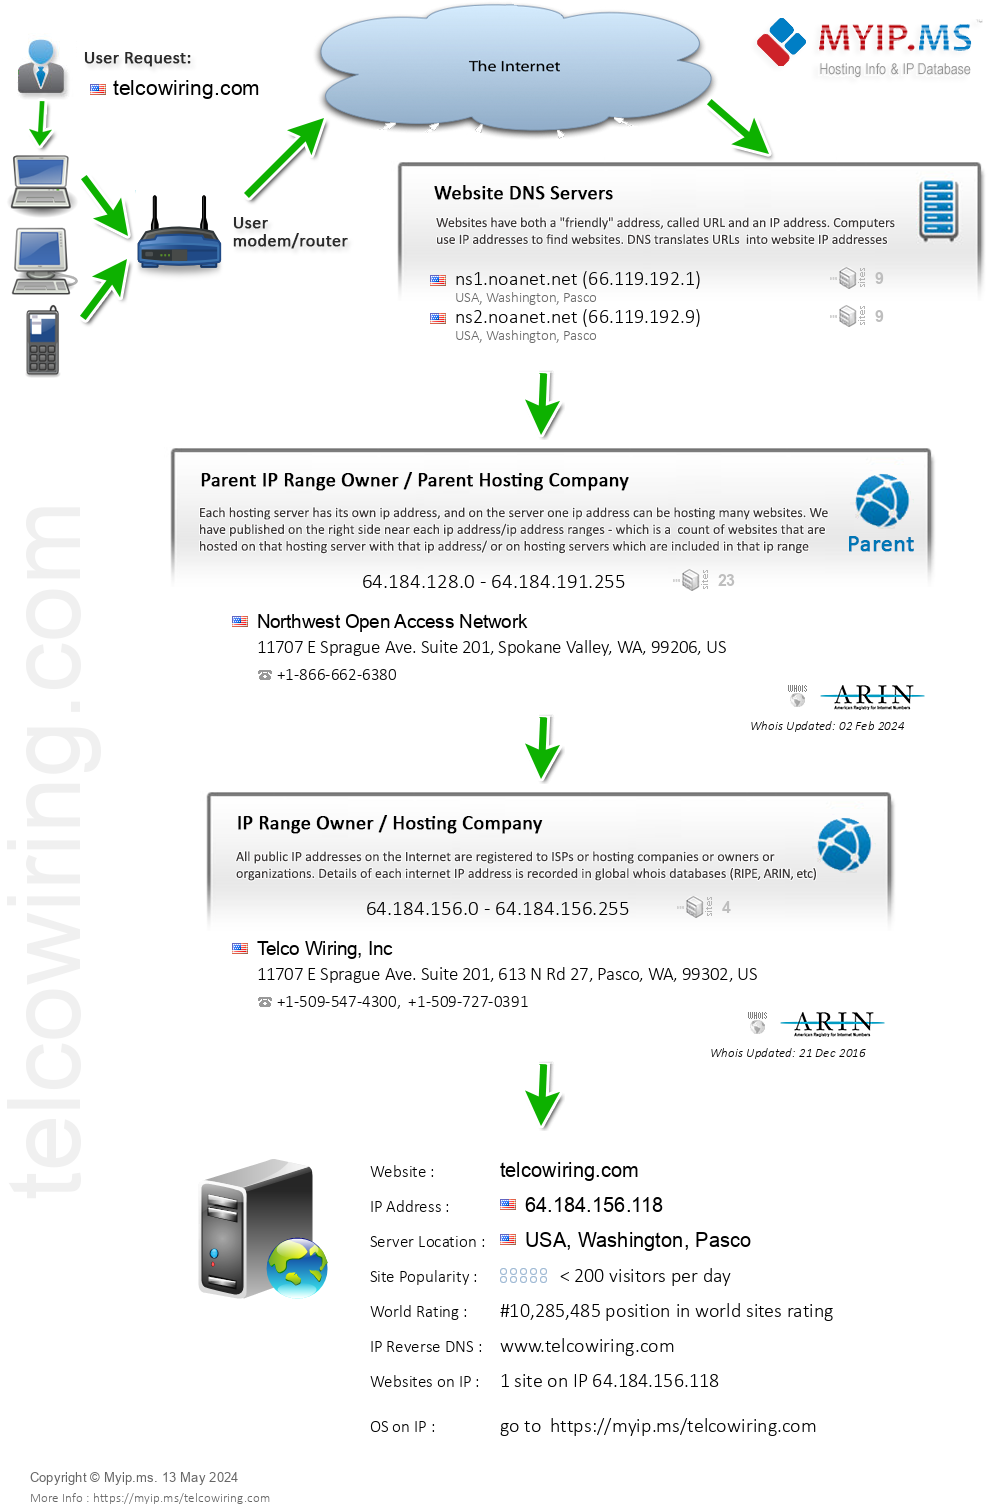 Telcowiring.com - Website Hosting Visual IP Diagram